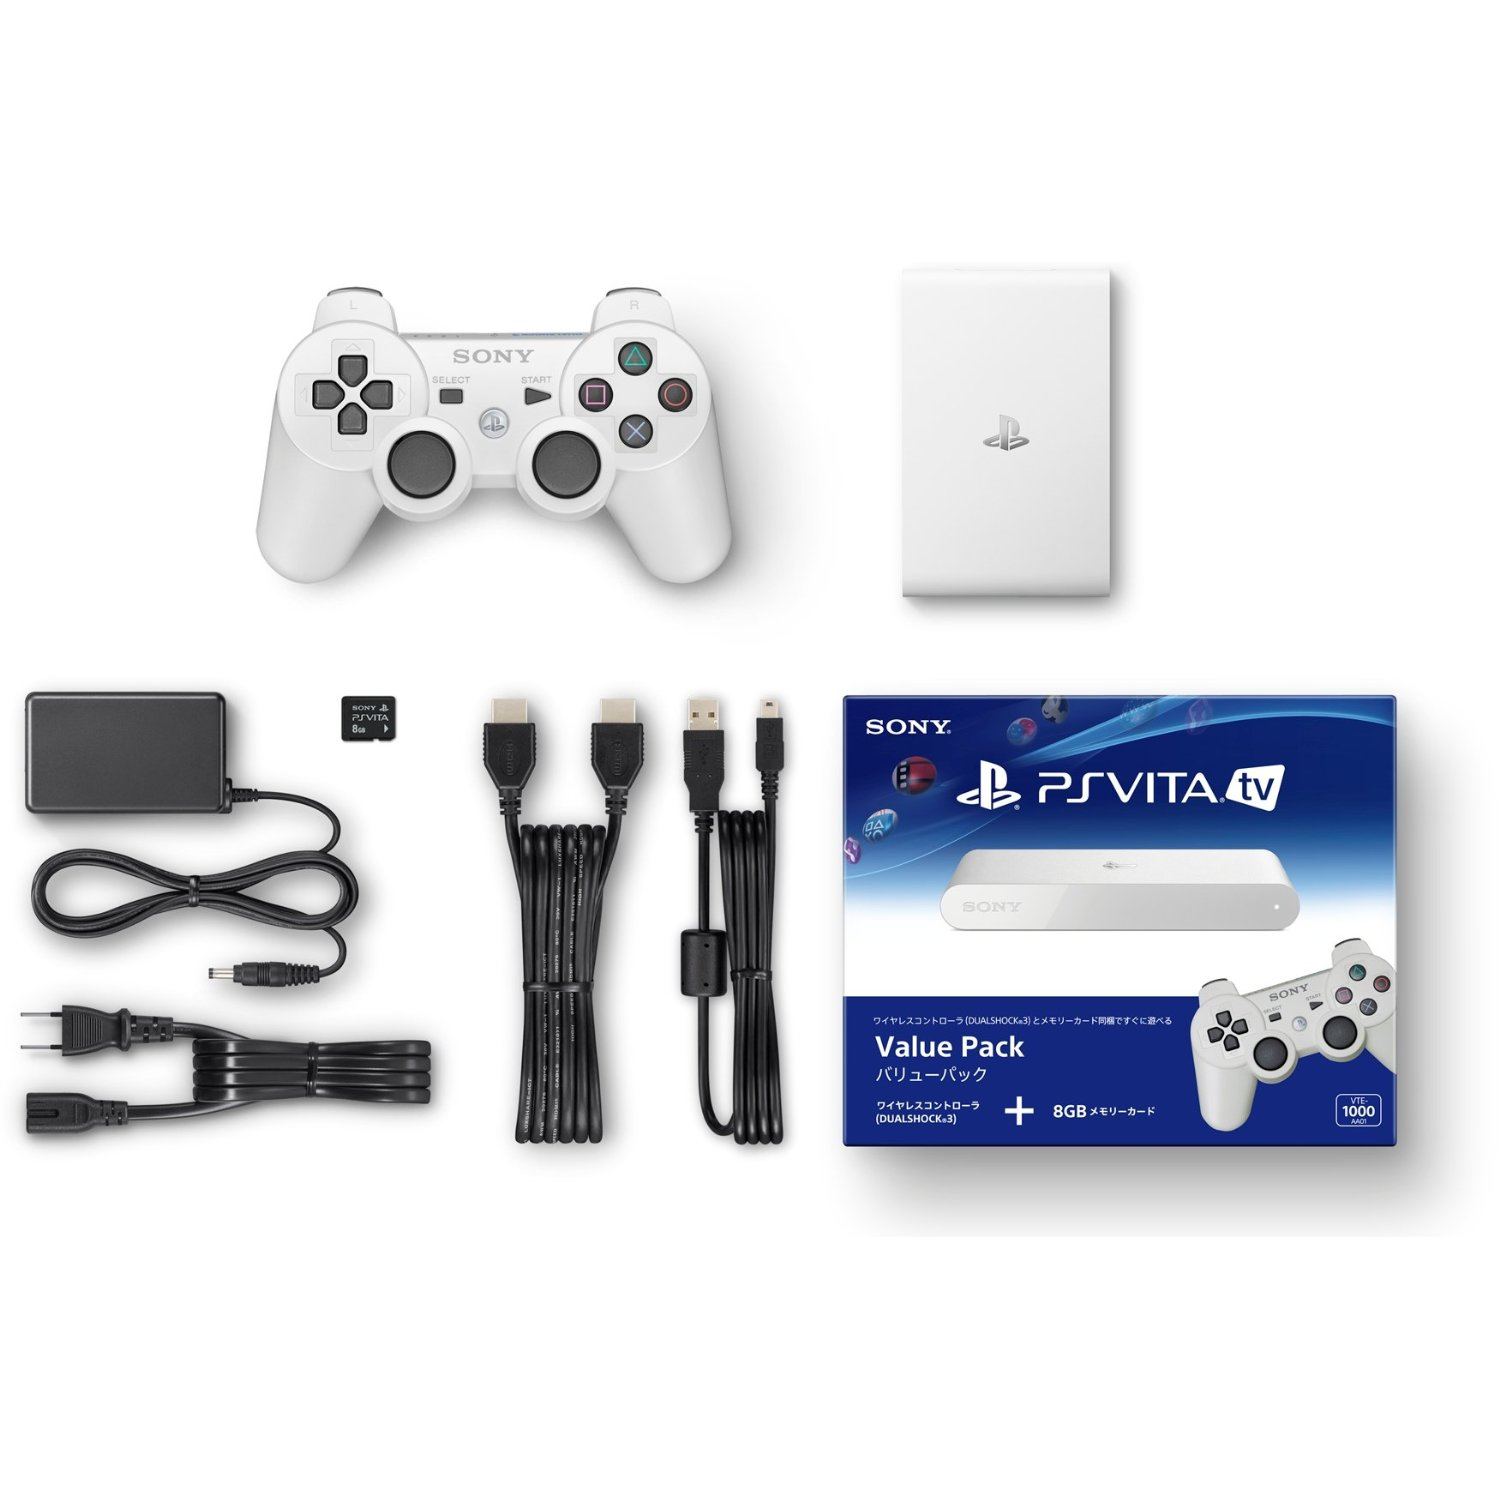 PlayStation Vita TV (Value Pack)